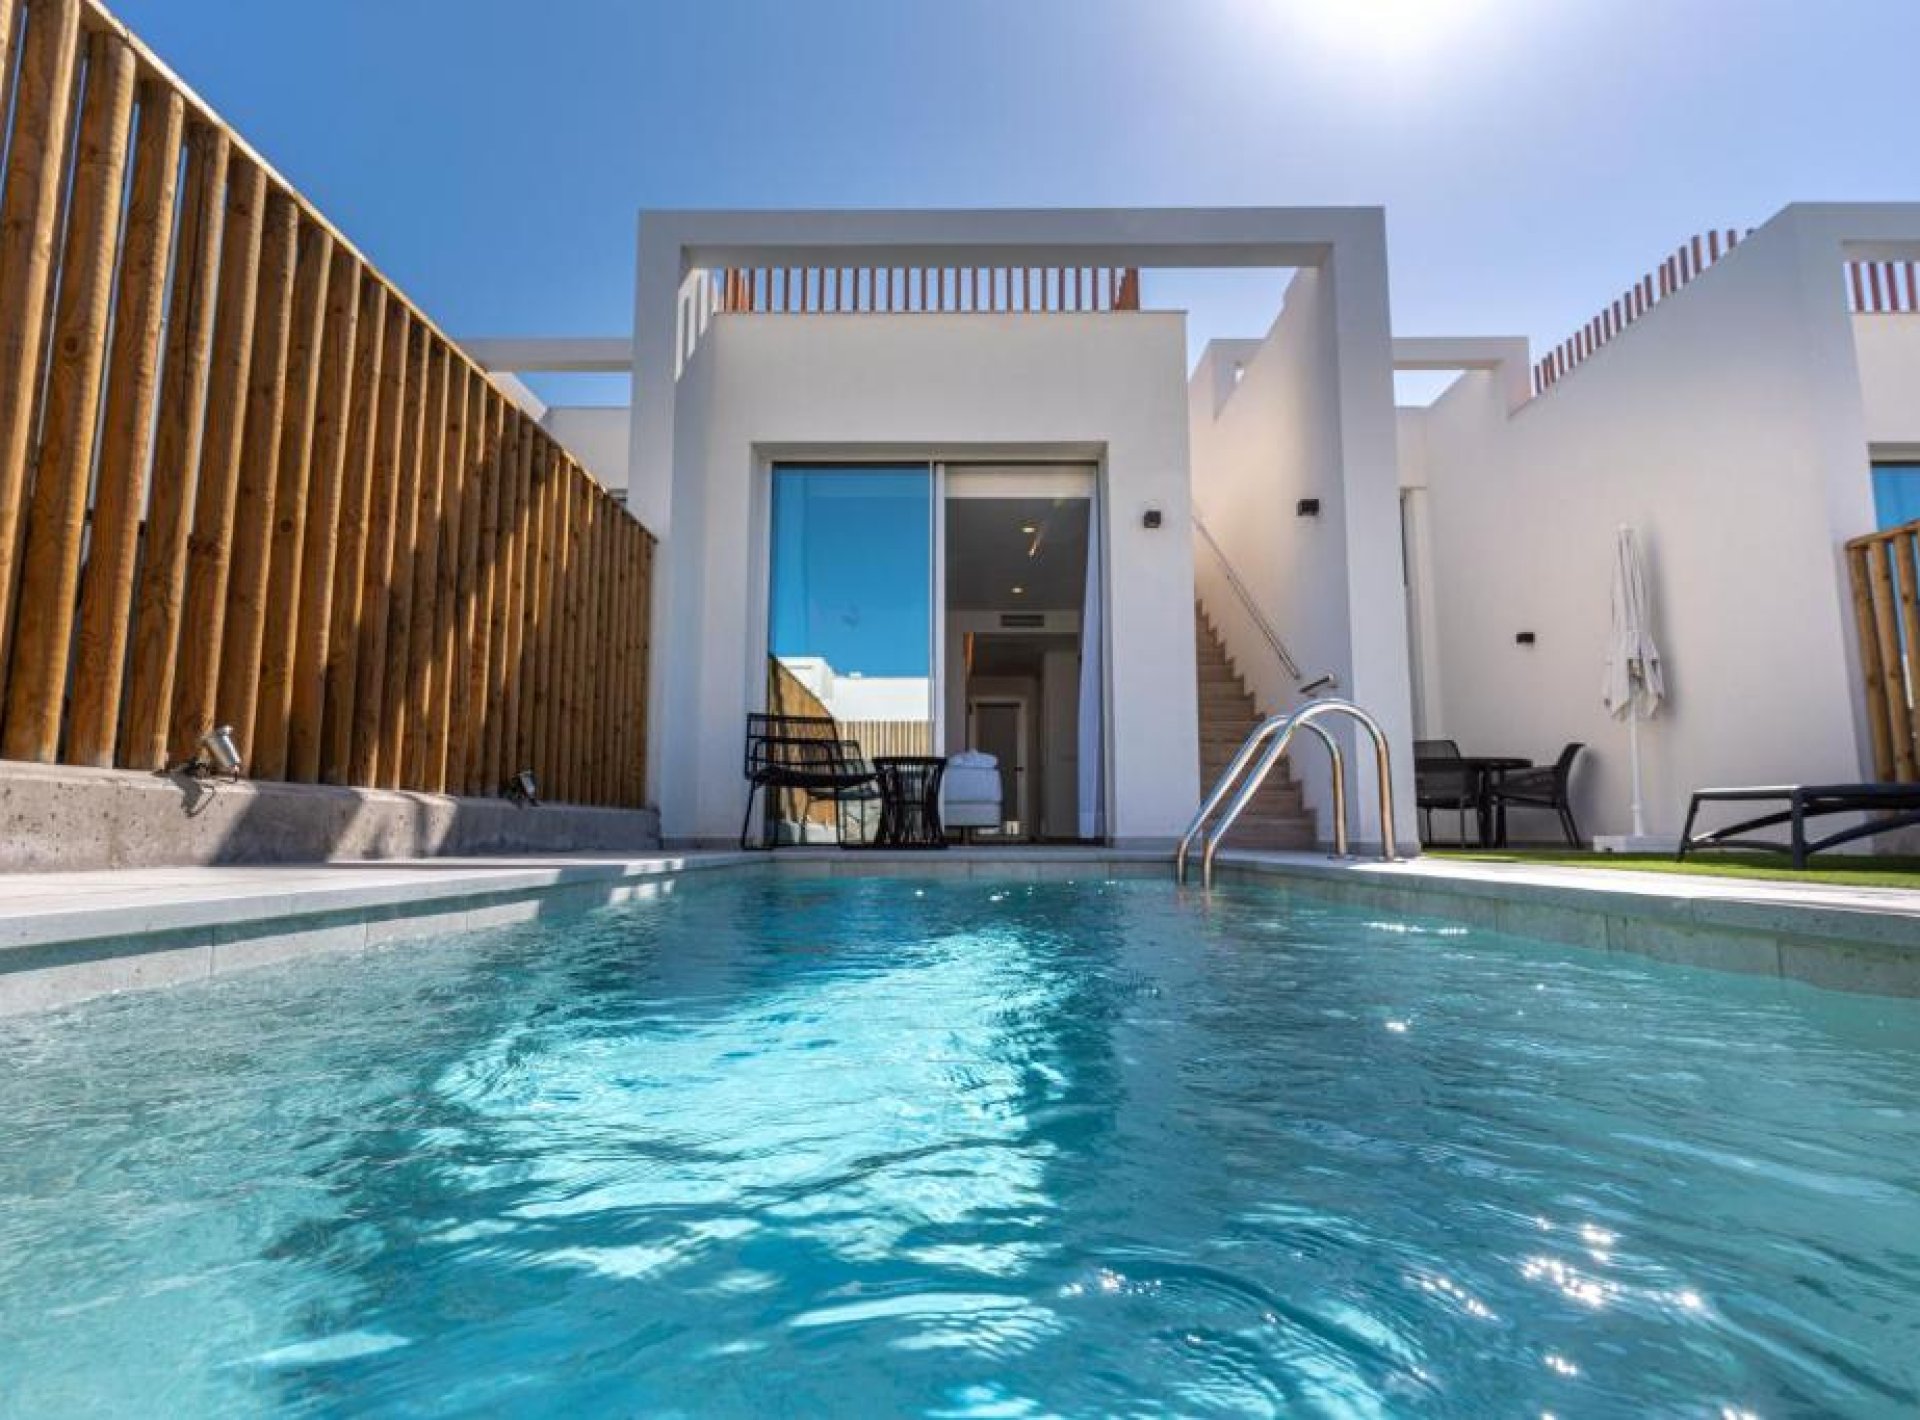 ISholidays Santa Agueda, Casa 2 dormitorios Deluxe, piscina privada.